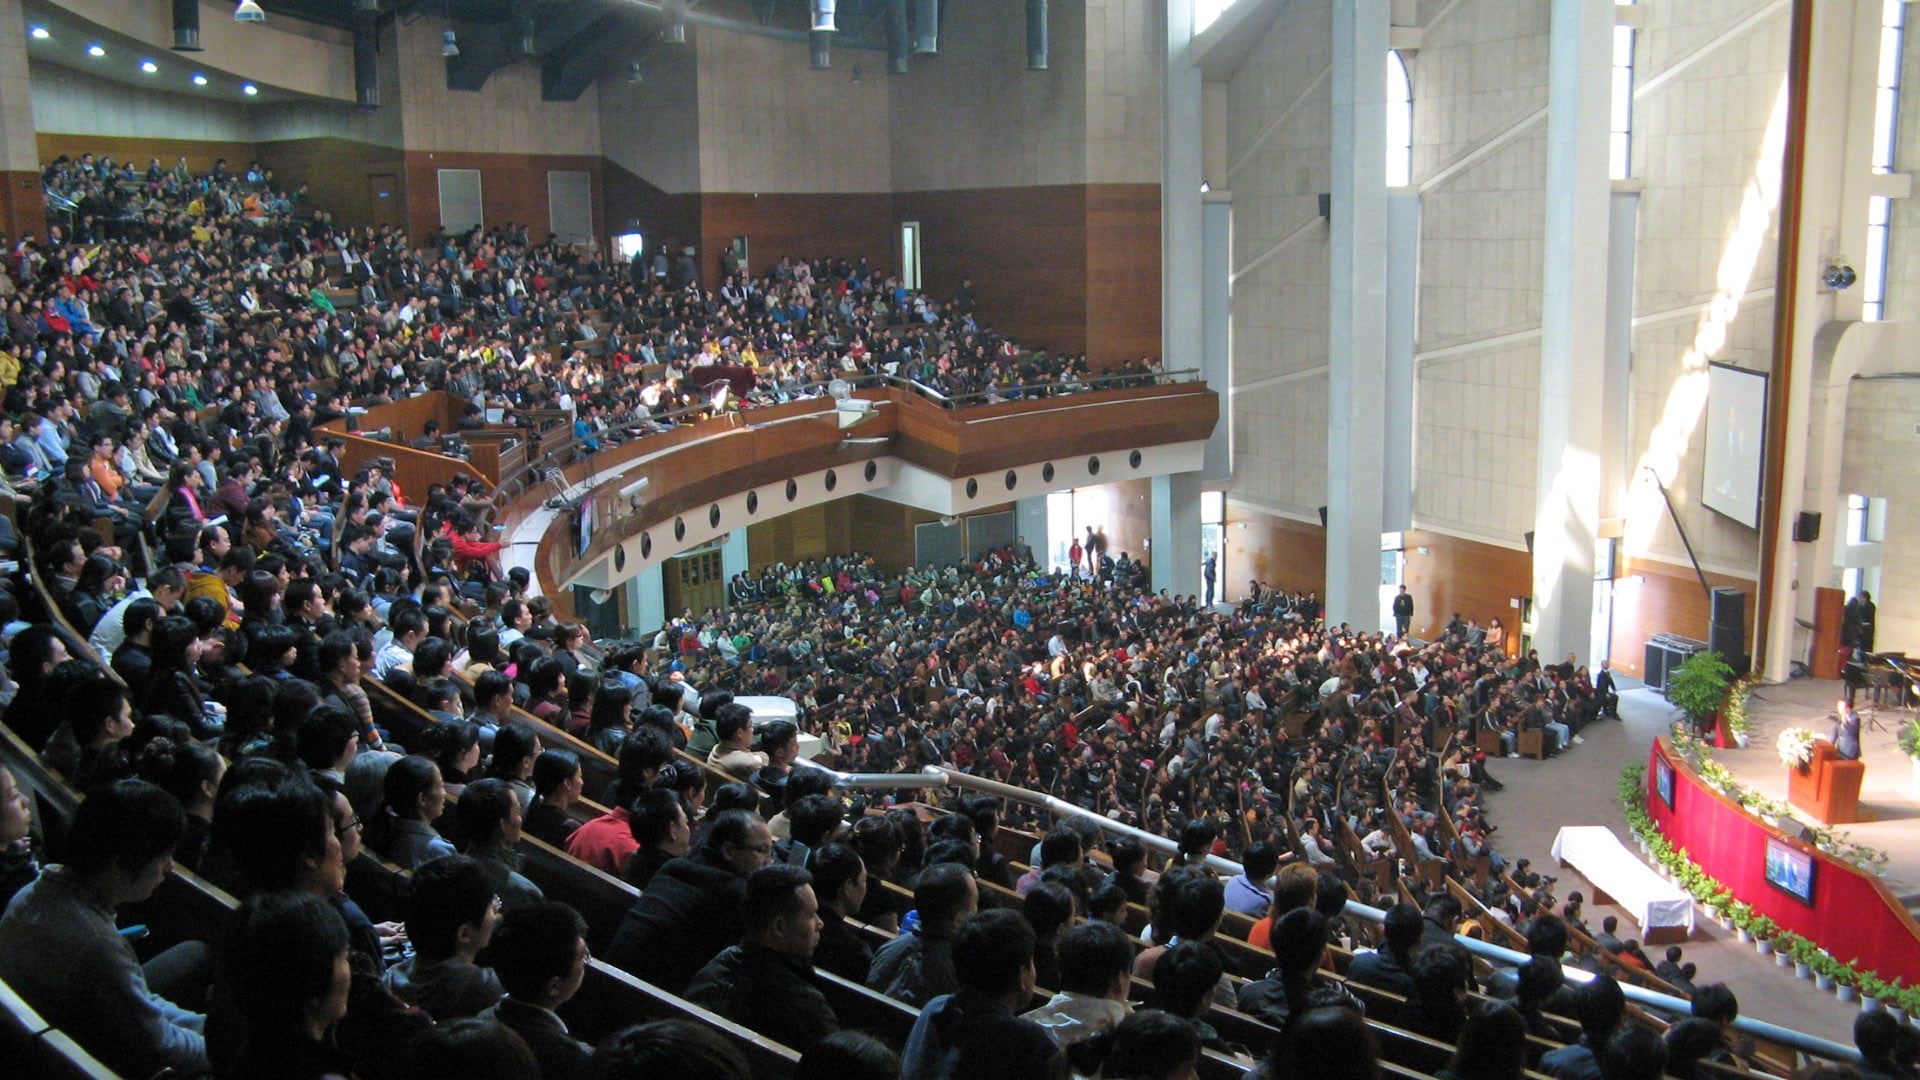 Die christlichen Gemeinden in China stehen unter Druck, aber sie werden immer größer